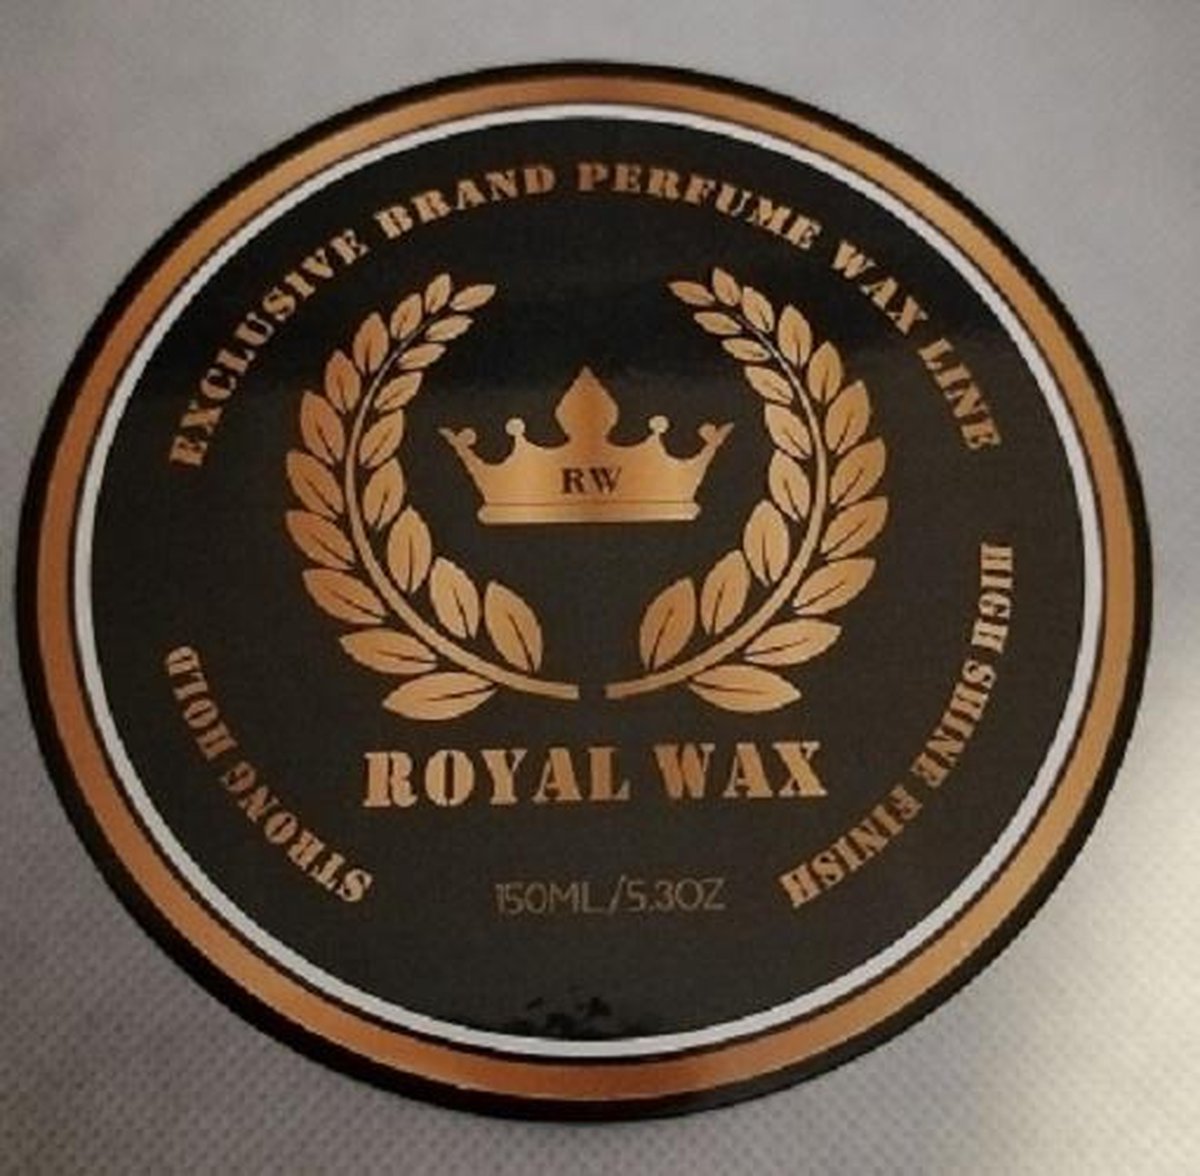 Royal Wax - Haarwax - Brand Perfume Wax